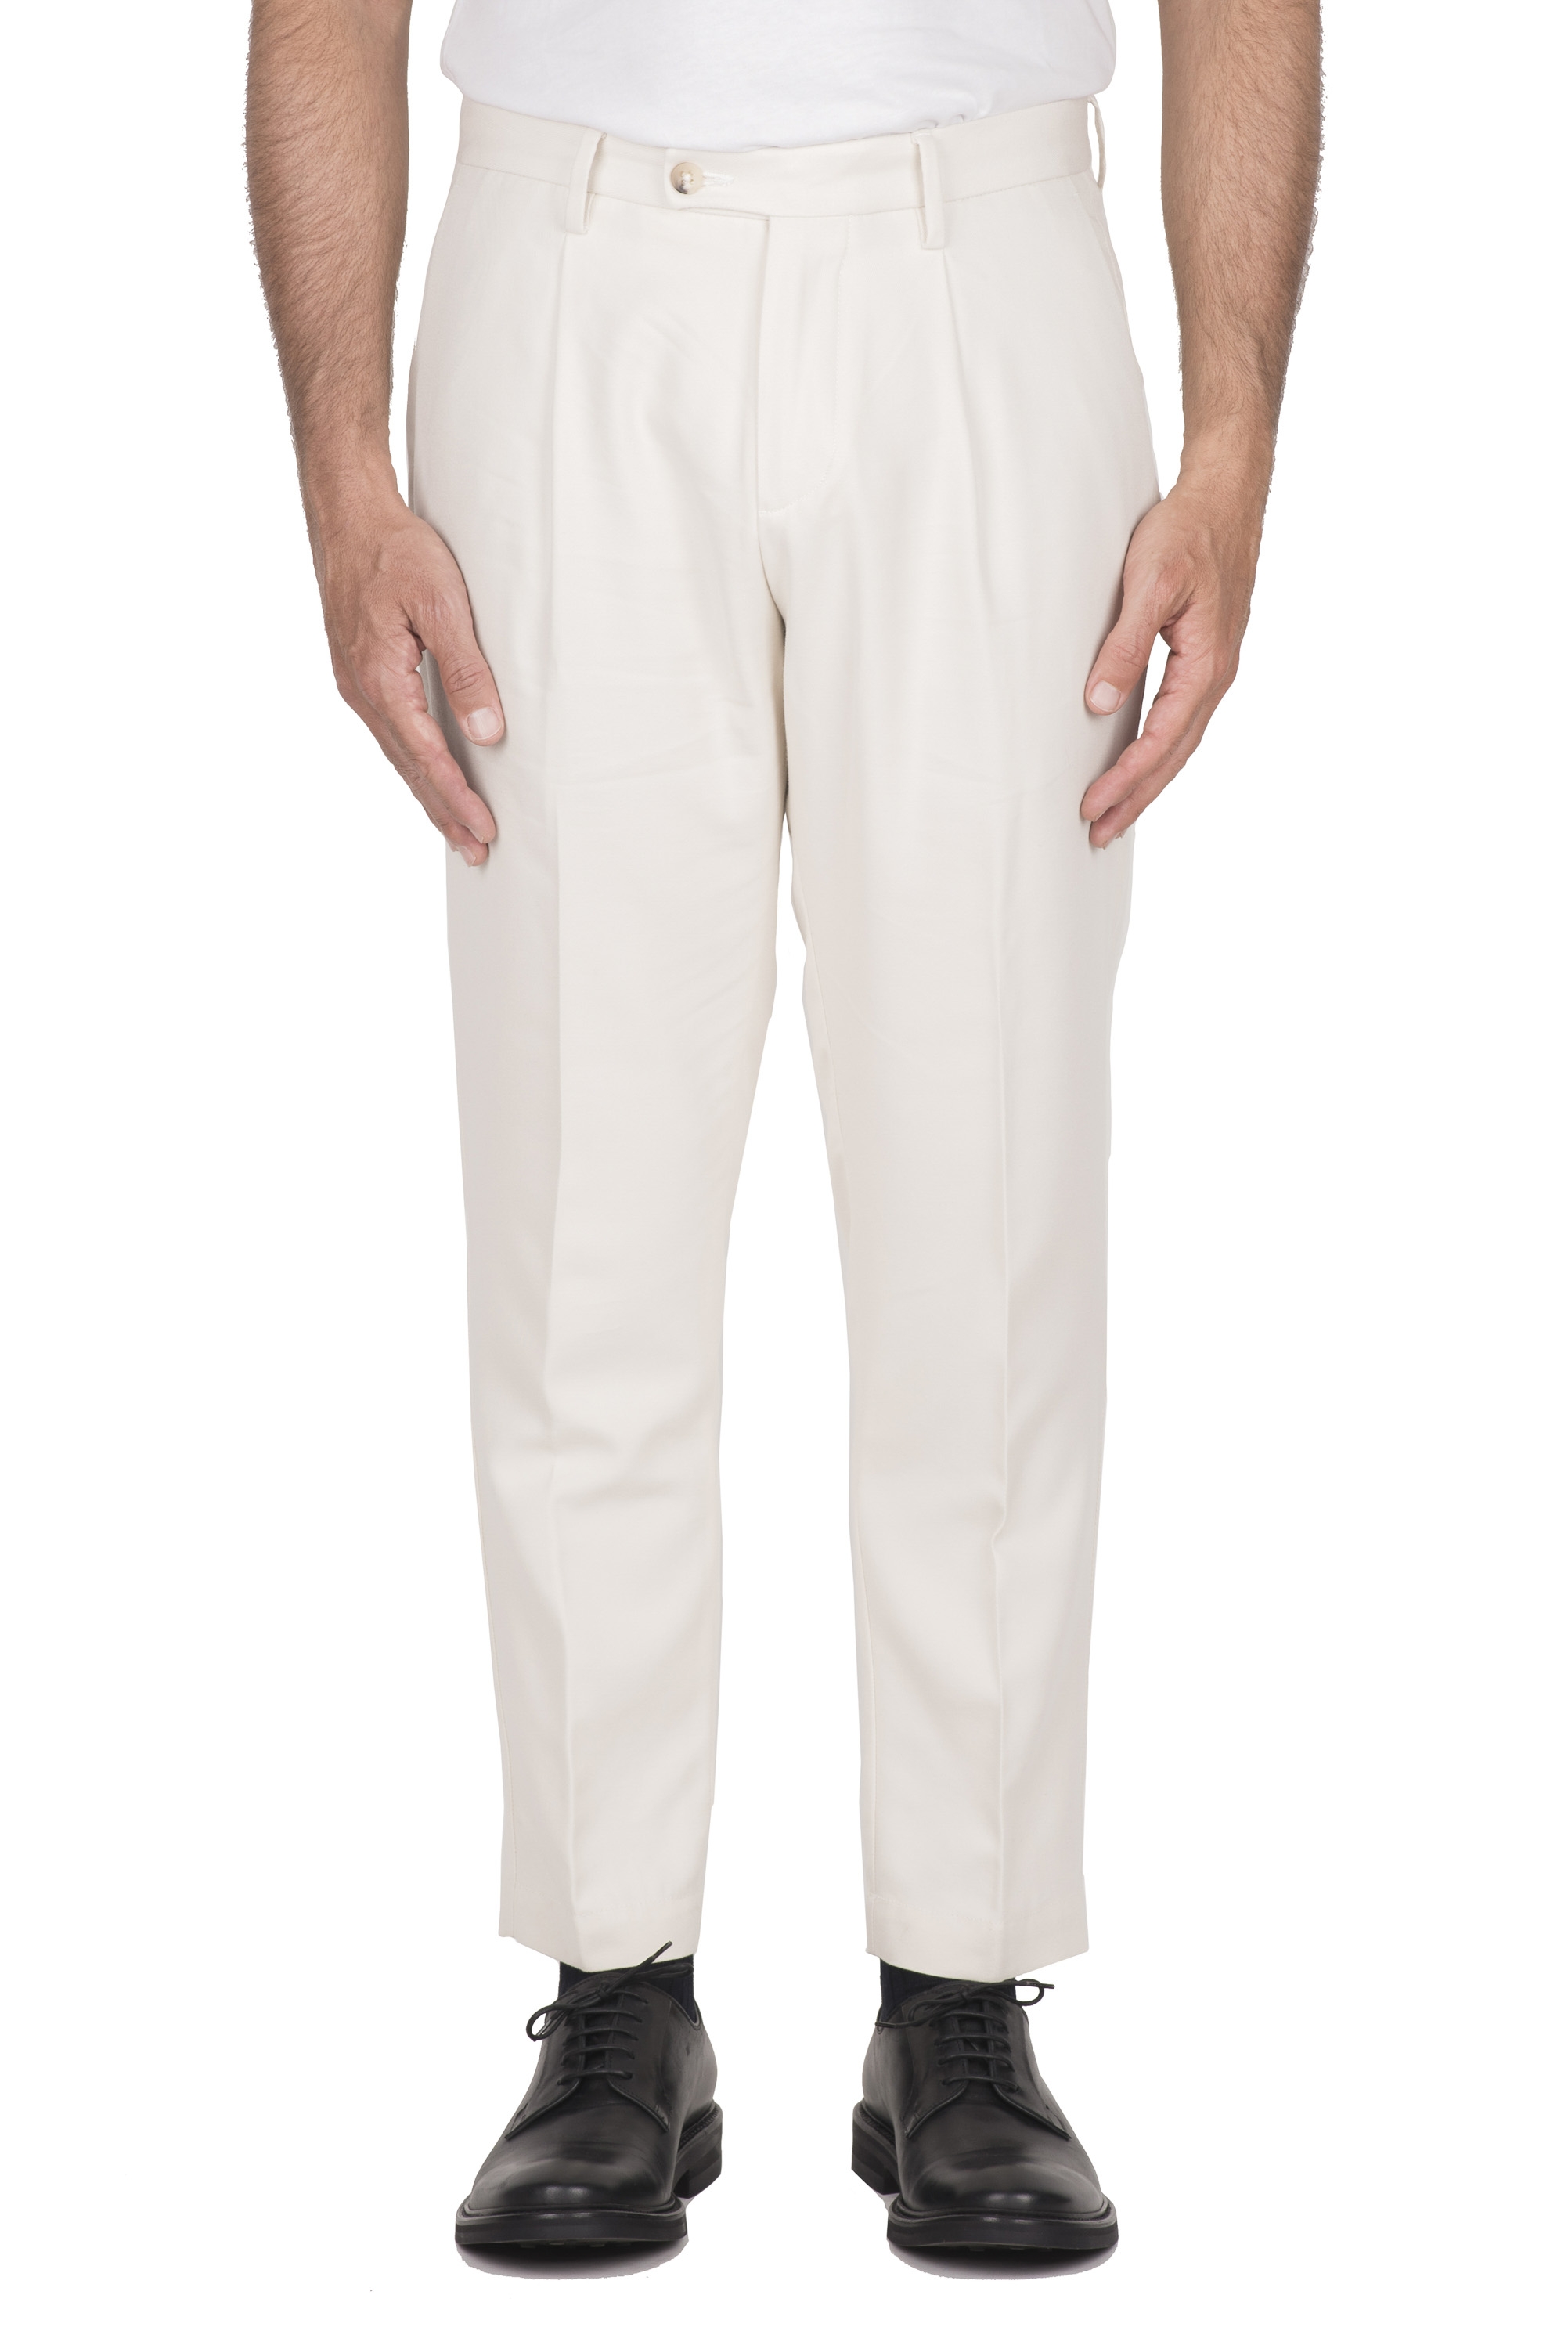 SBU 03428_2021AW Pantaloni classico in cotone bianco elasticizzato con pinces 01